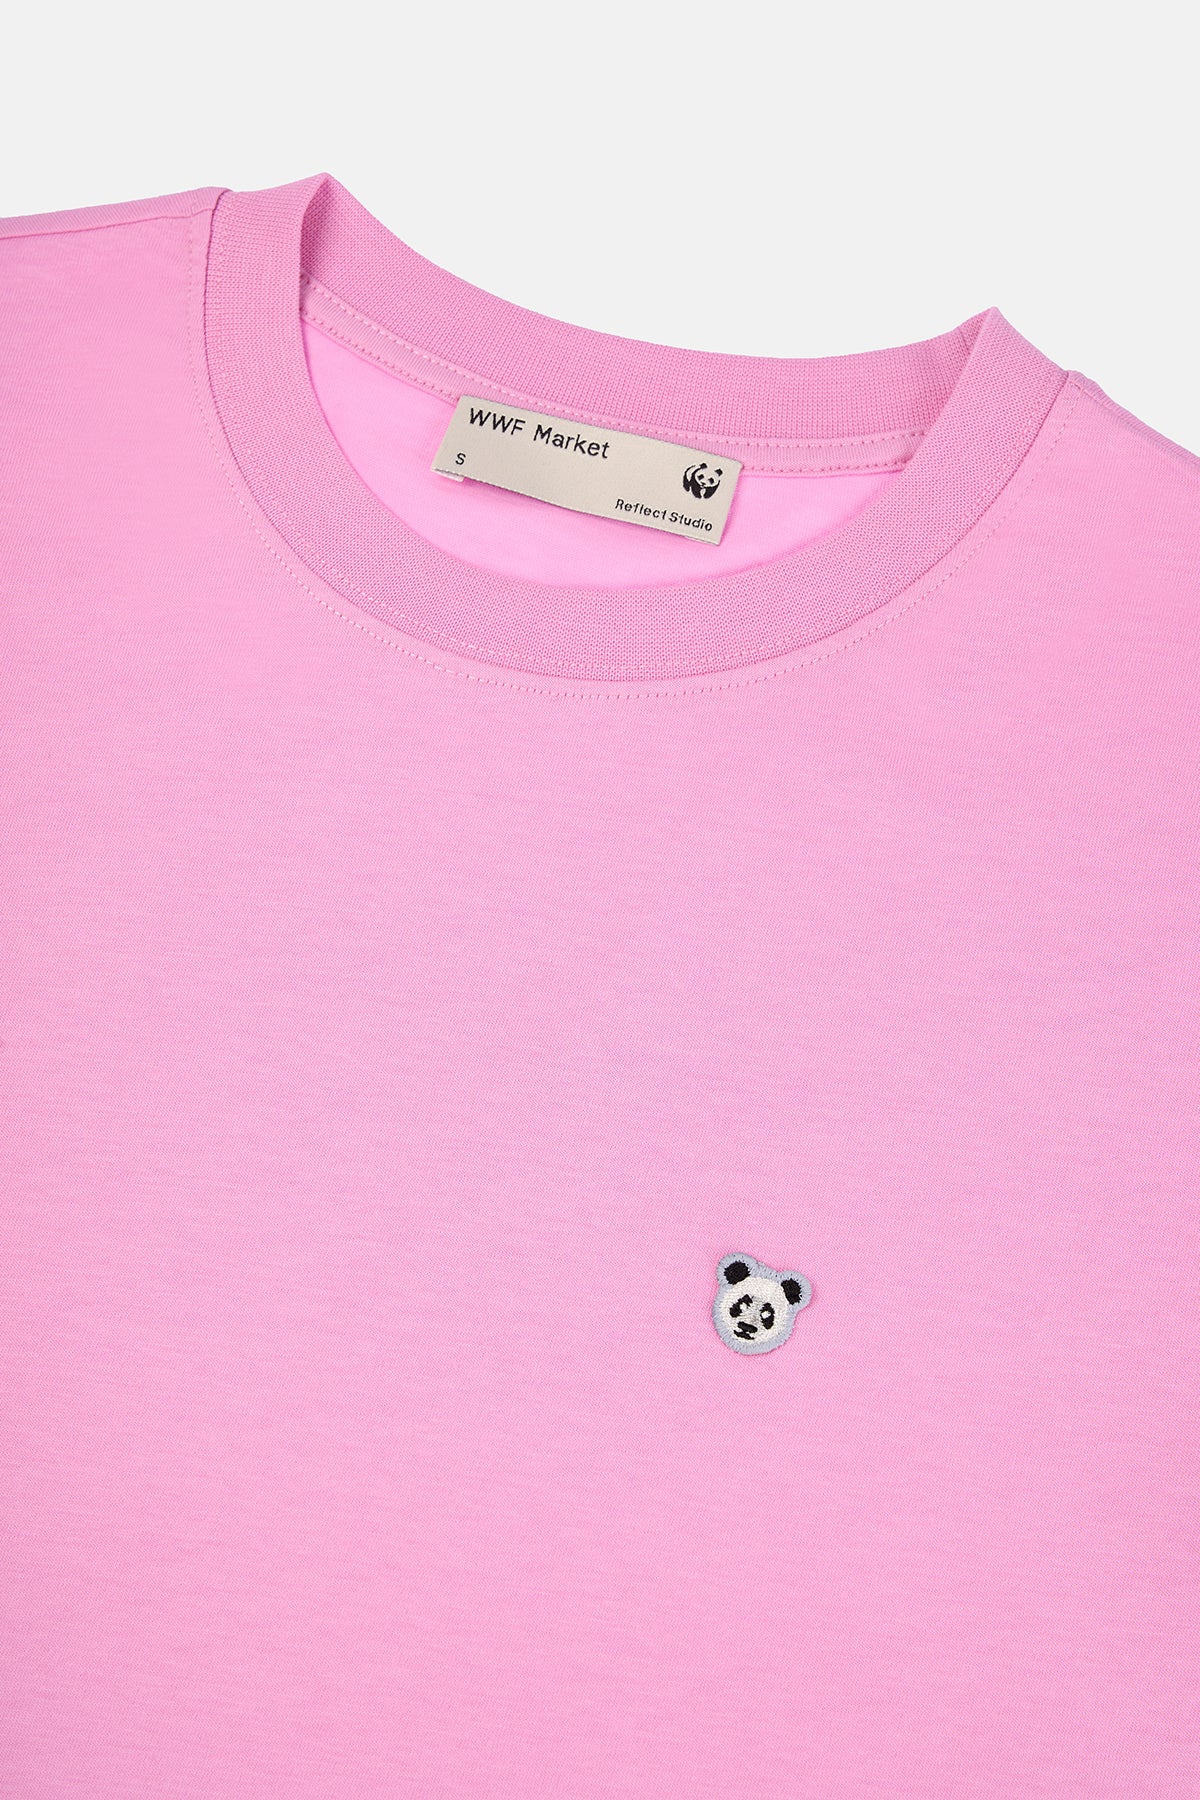 Panda Supreme Kadın T-shirt  - Pembe